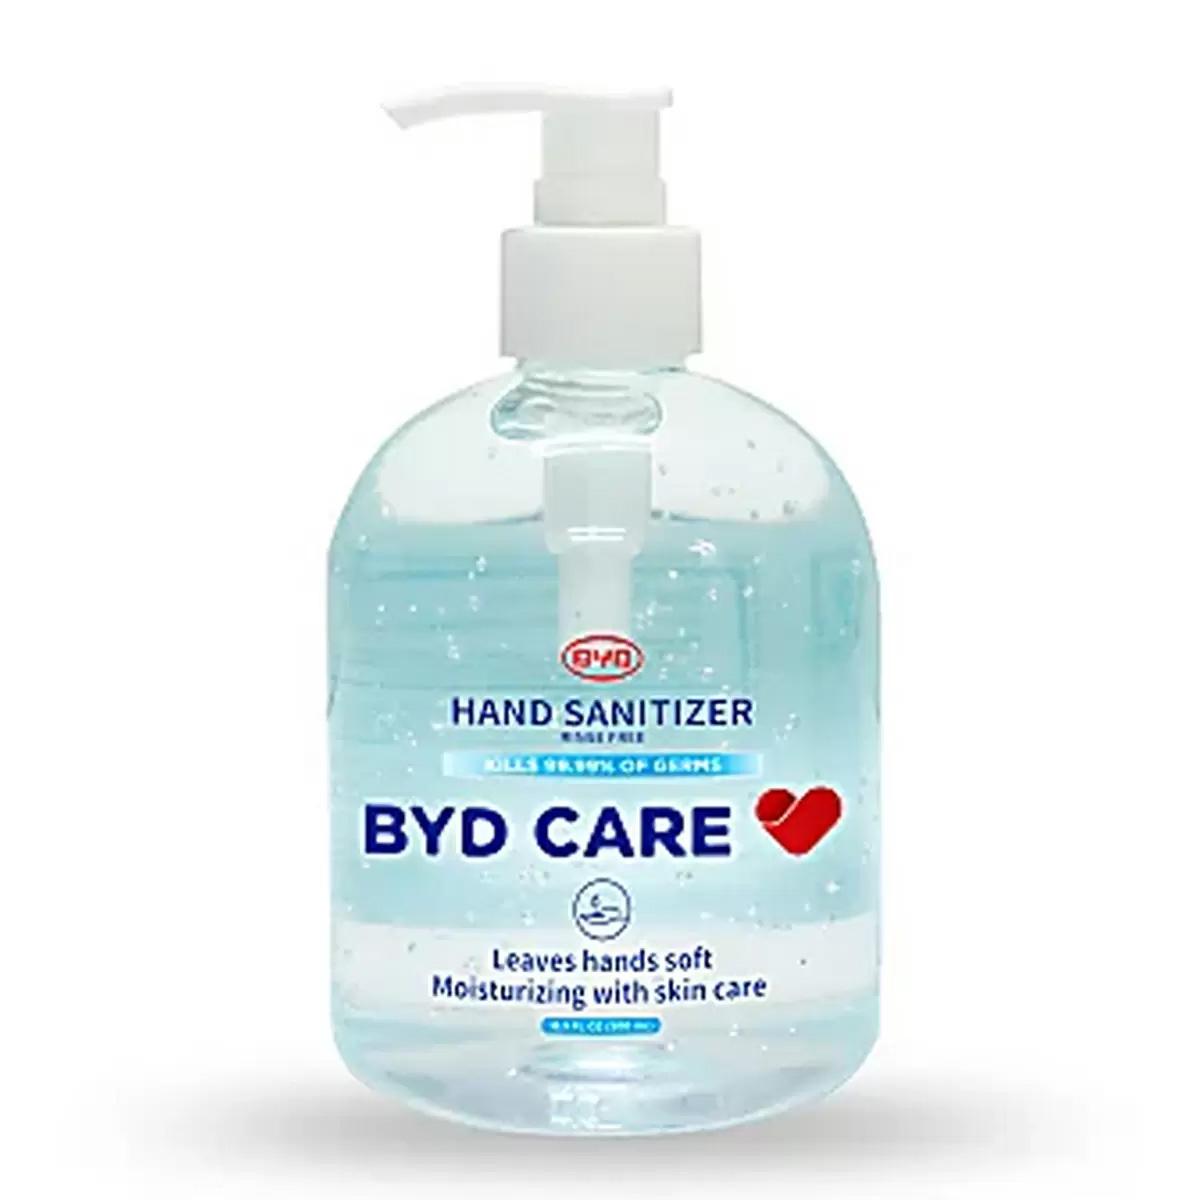 BYD Care Hand Sanitizer Pump Bottle for Free After Rewards